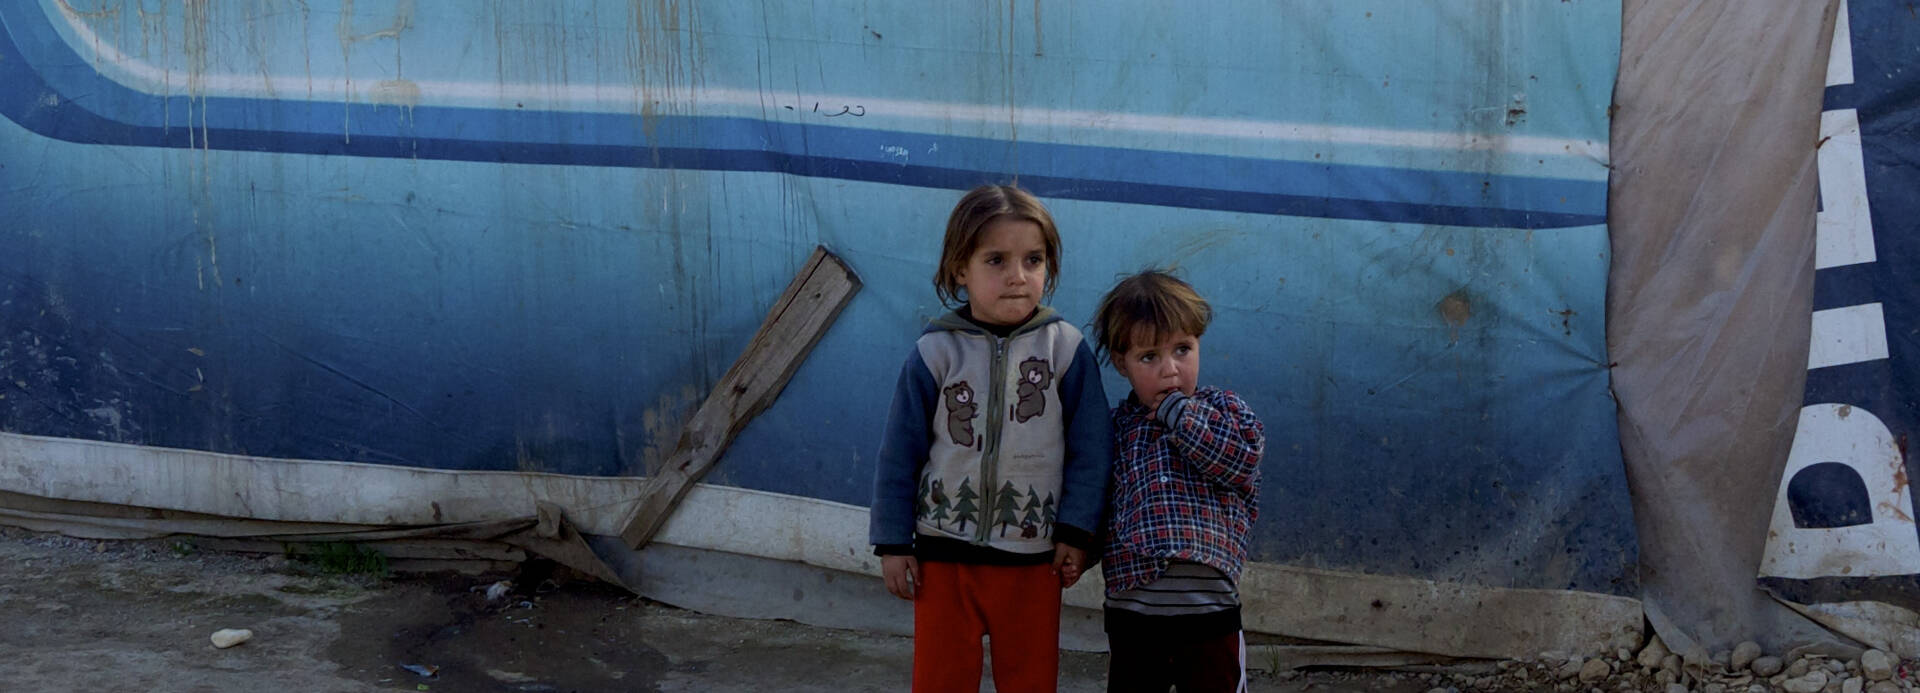 Geschwister halten Händchen in einem Flüchtlingslager im Libanon - sie mussten vor dem Krieg in Syrien fliehen